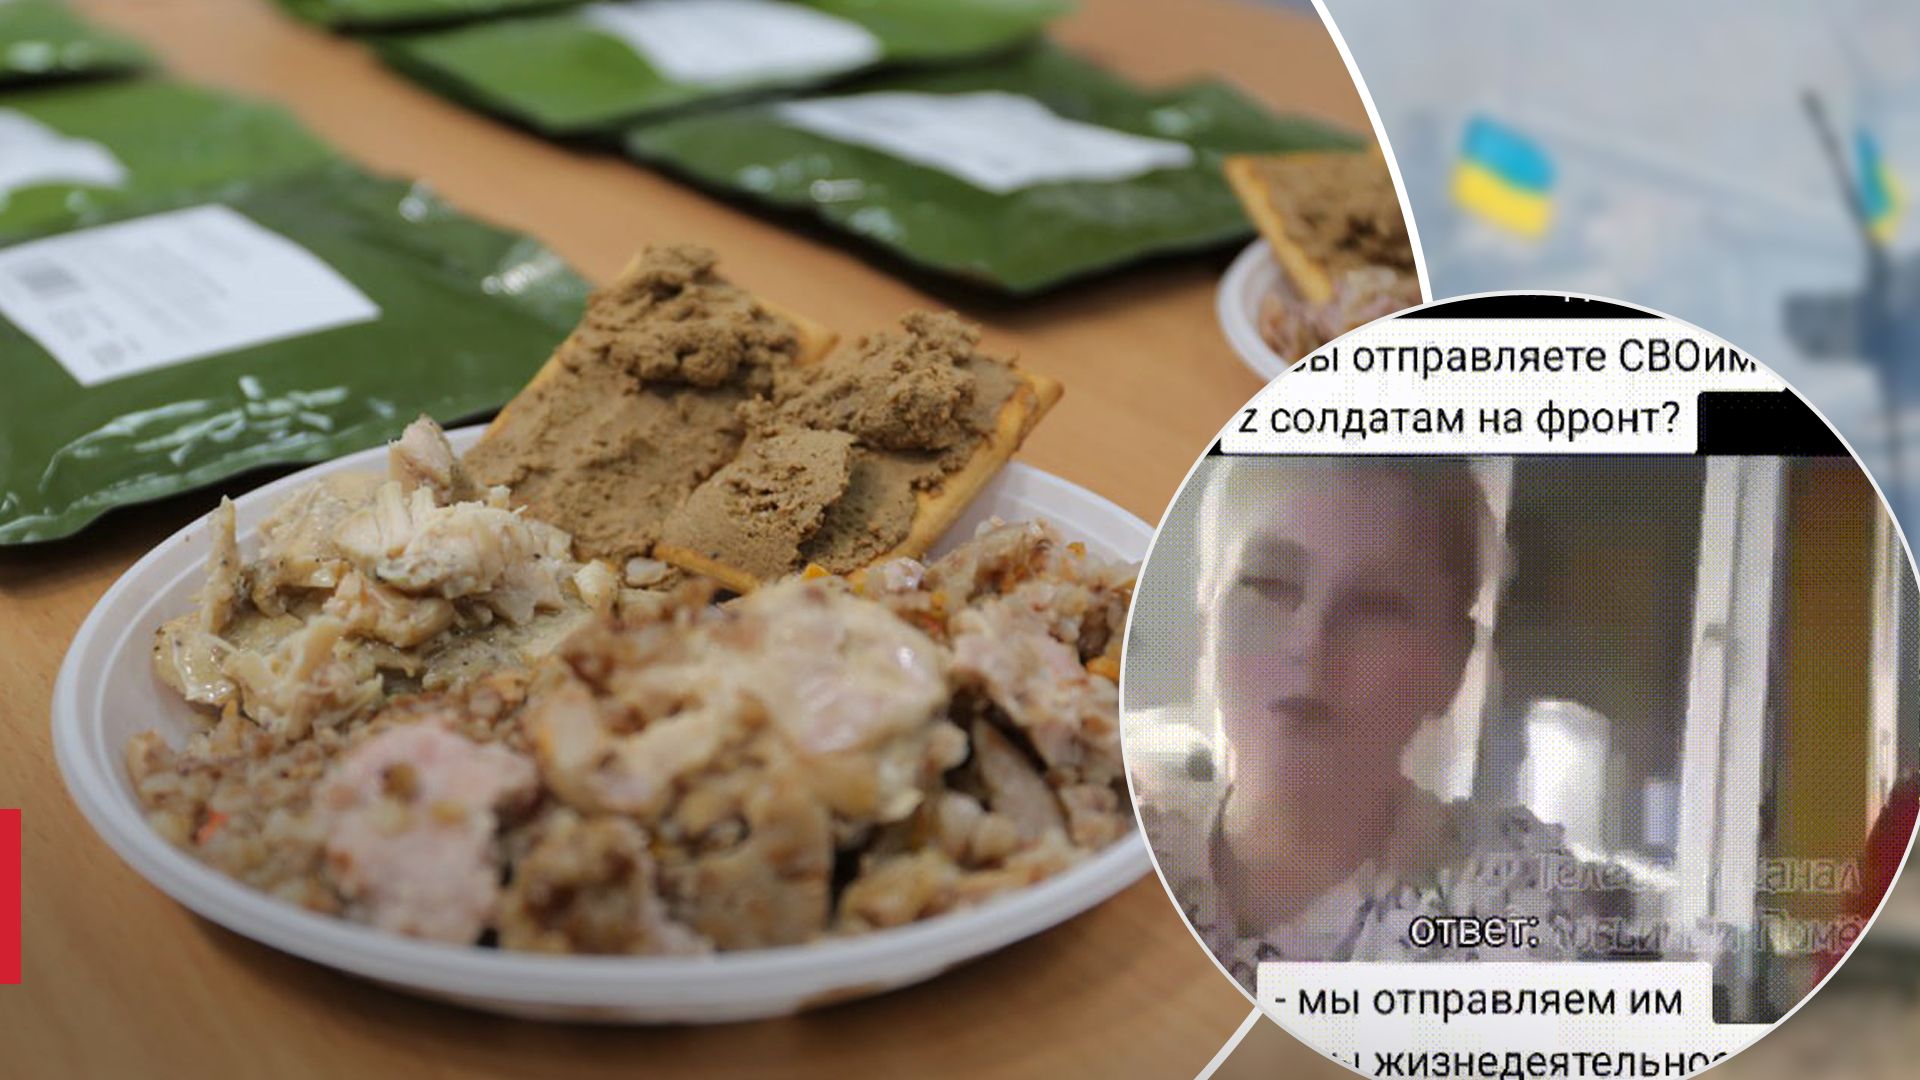 Российские солдаты едят продукты жизнедеятельности